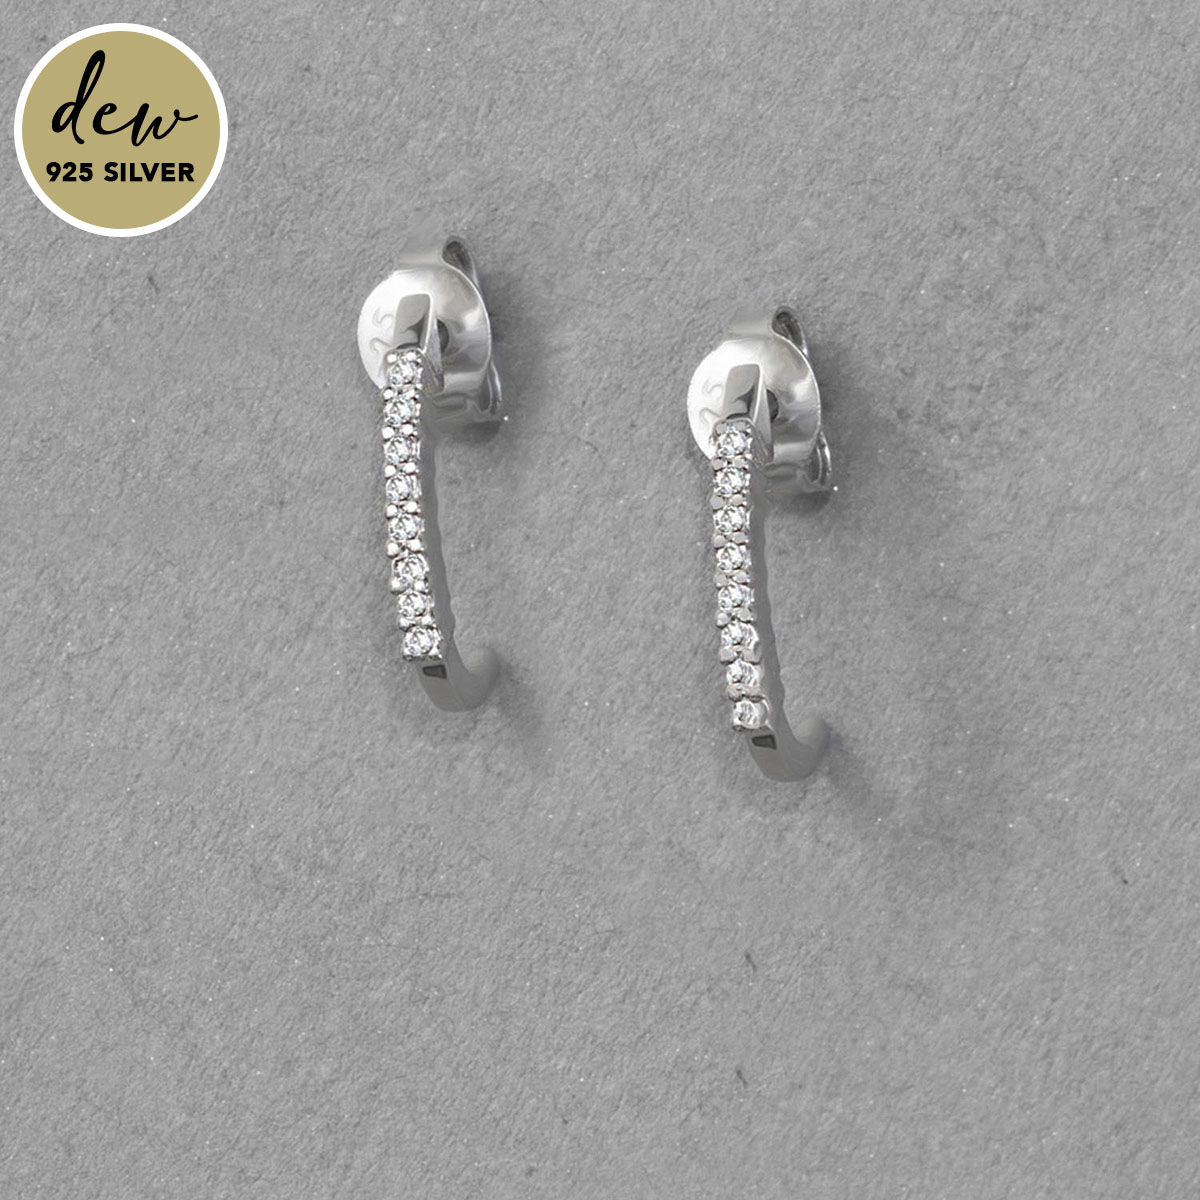 Dew by PB Sterling Silver Cubic Zirconia Ava Earrings